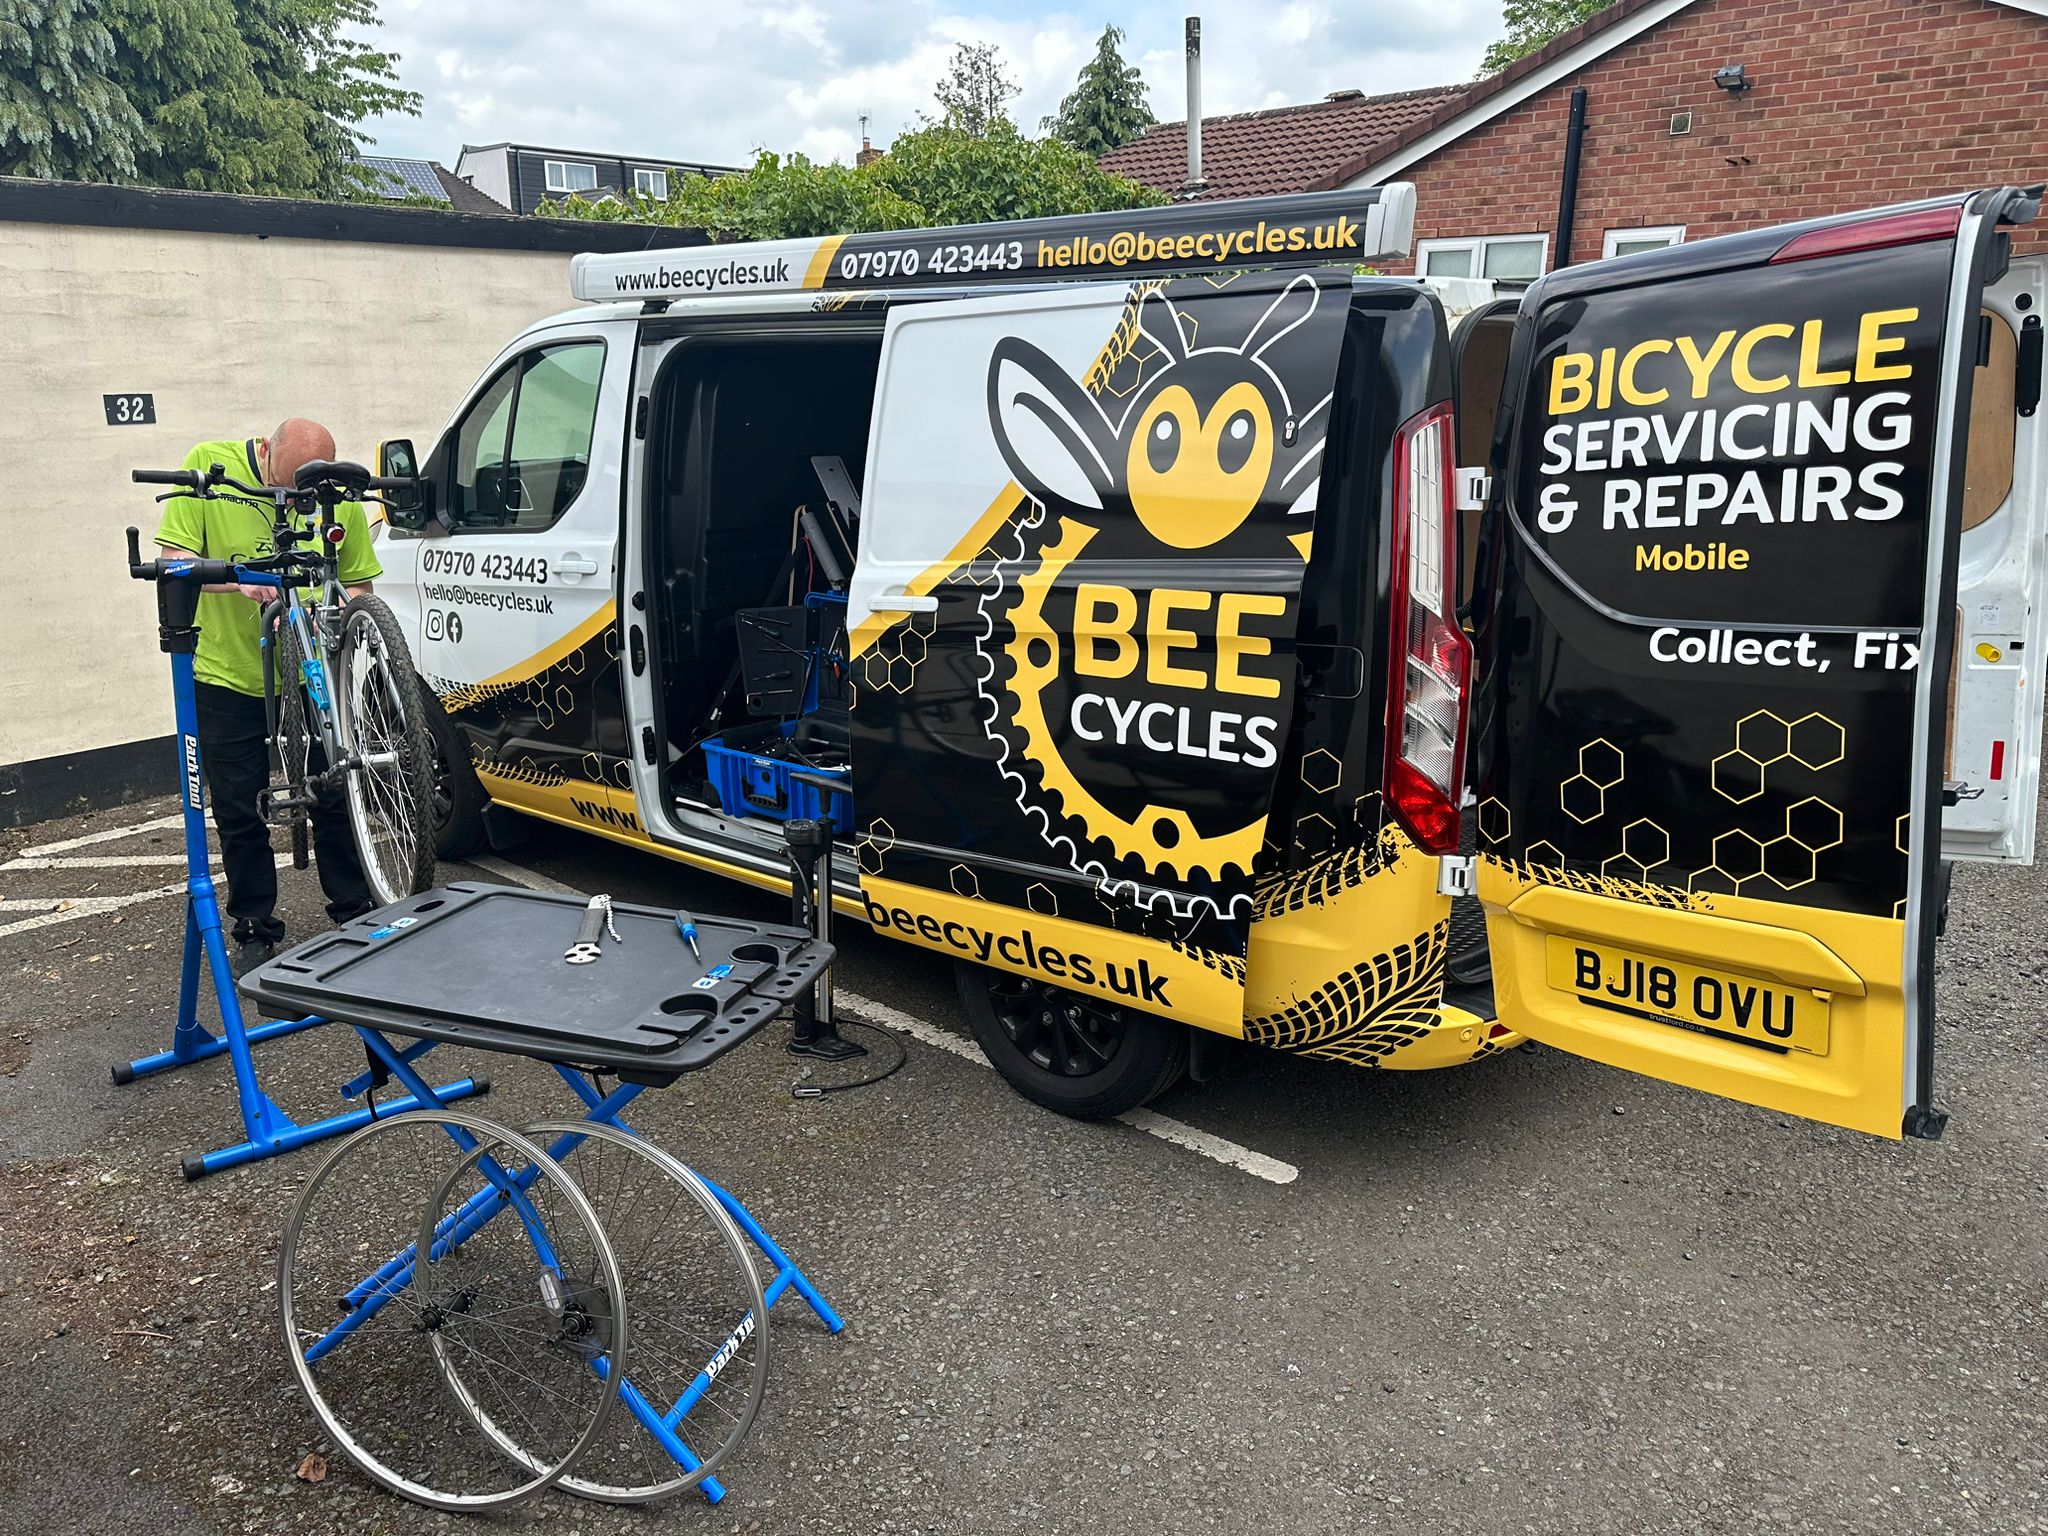 Mobile bike repairs